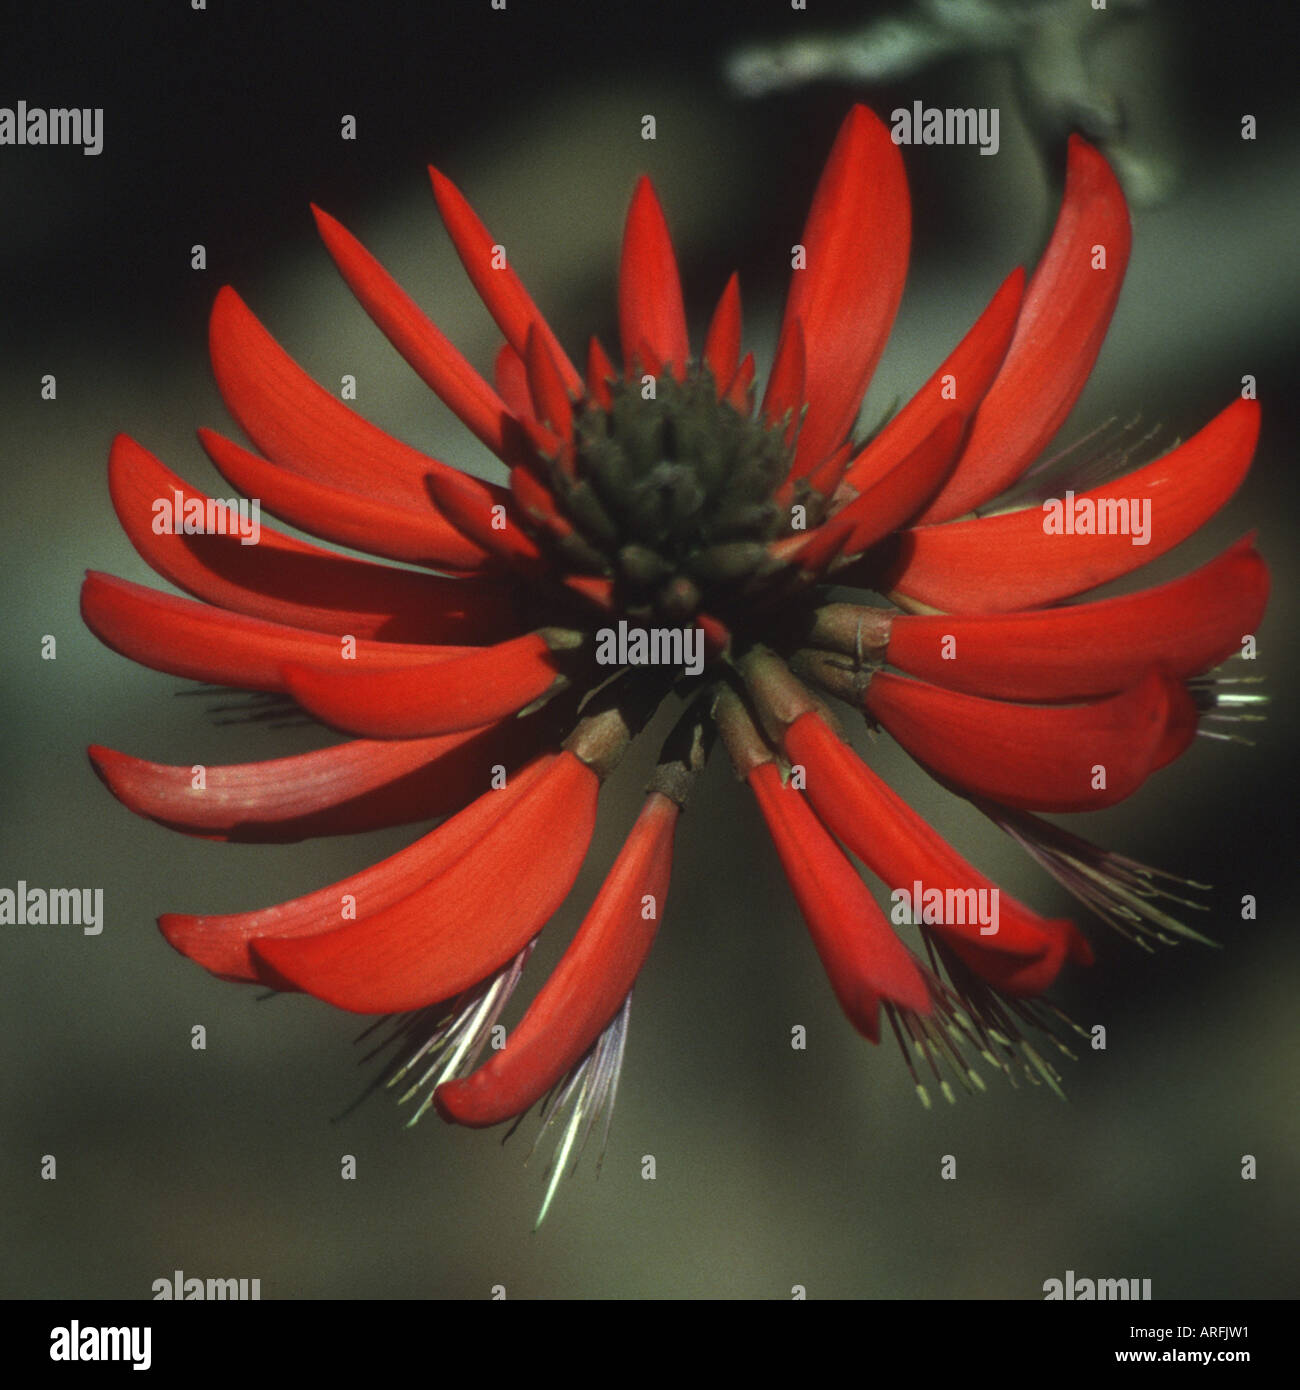 Flame Tree (Brachychiton acerifolium), Flame Tree Flower, Australia Stock Photo